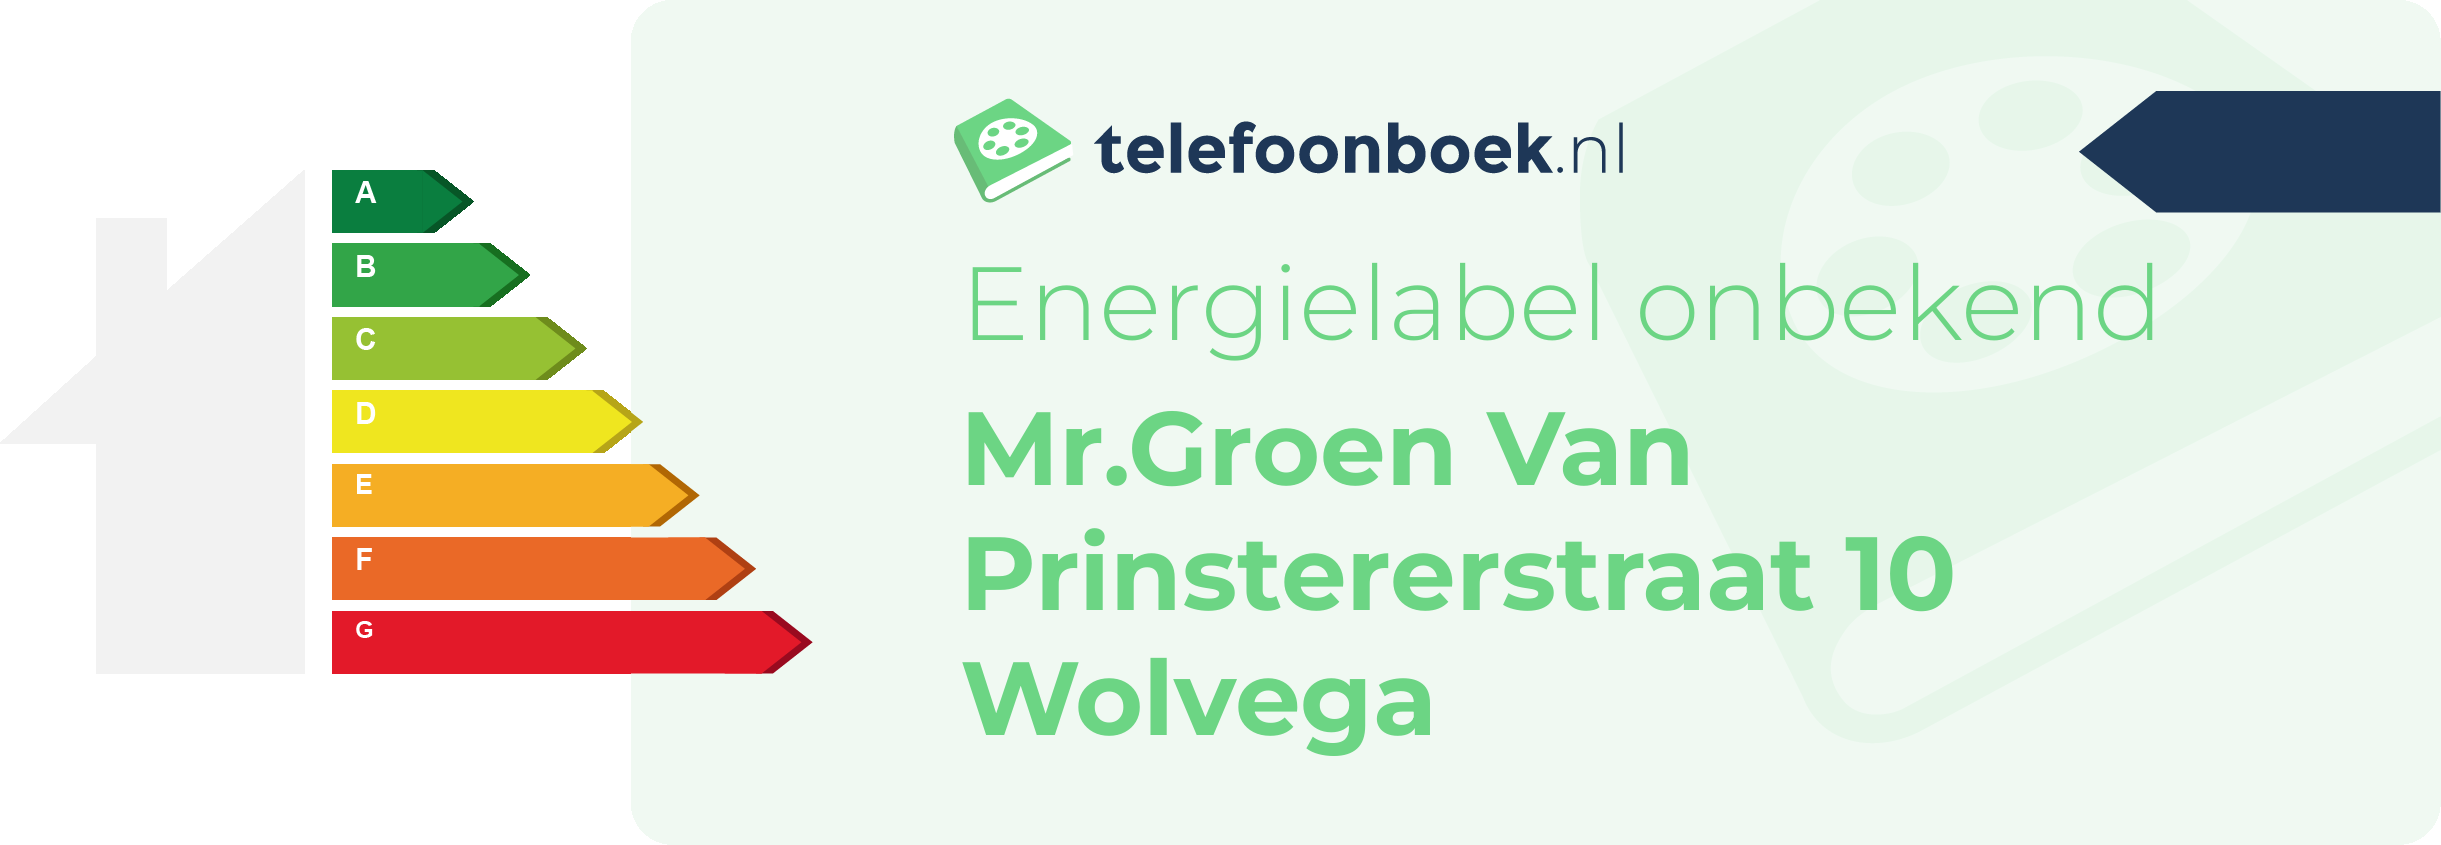 Energielabel Mr.Groen Van Prinstererstraat 10 Wolvega